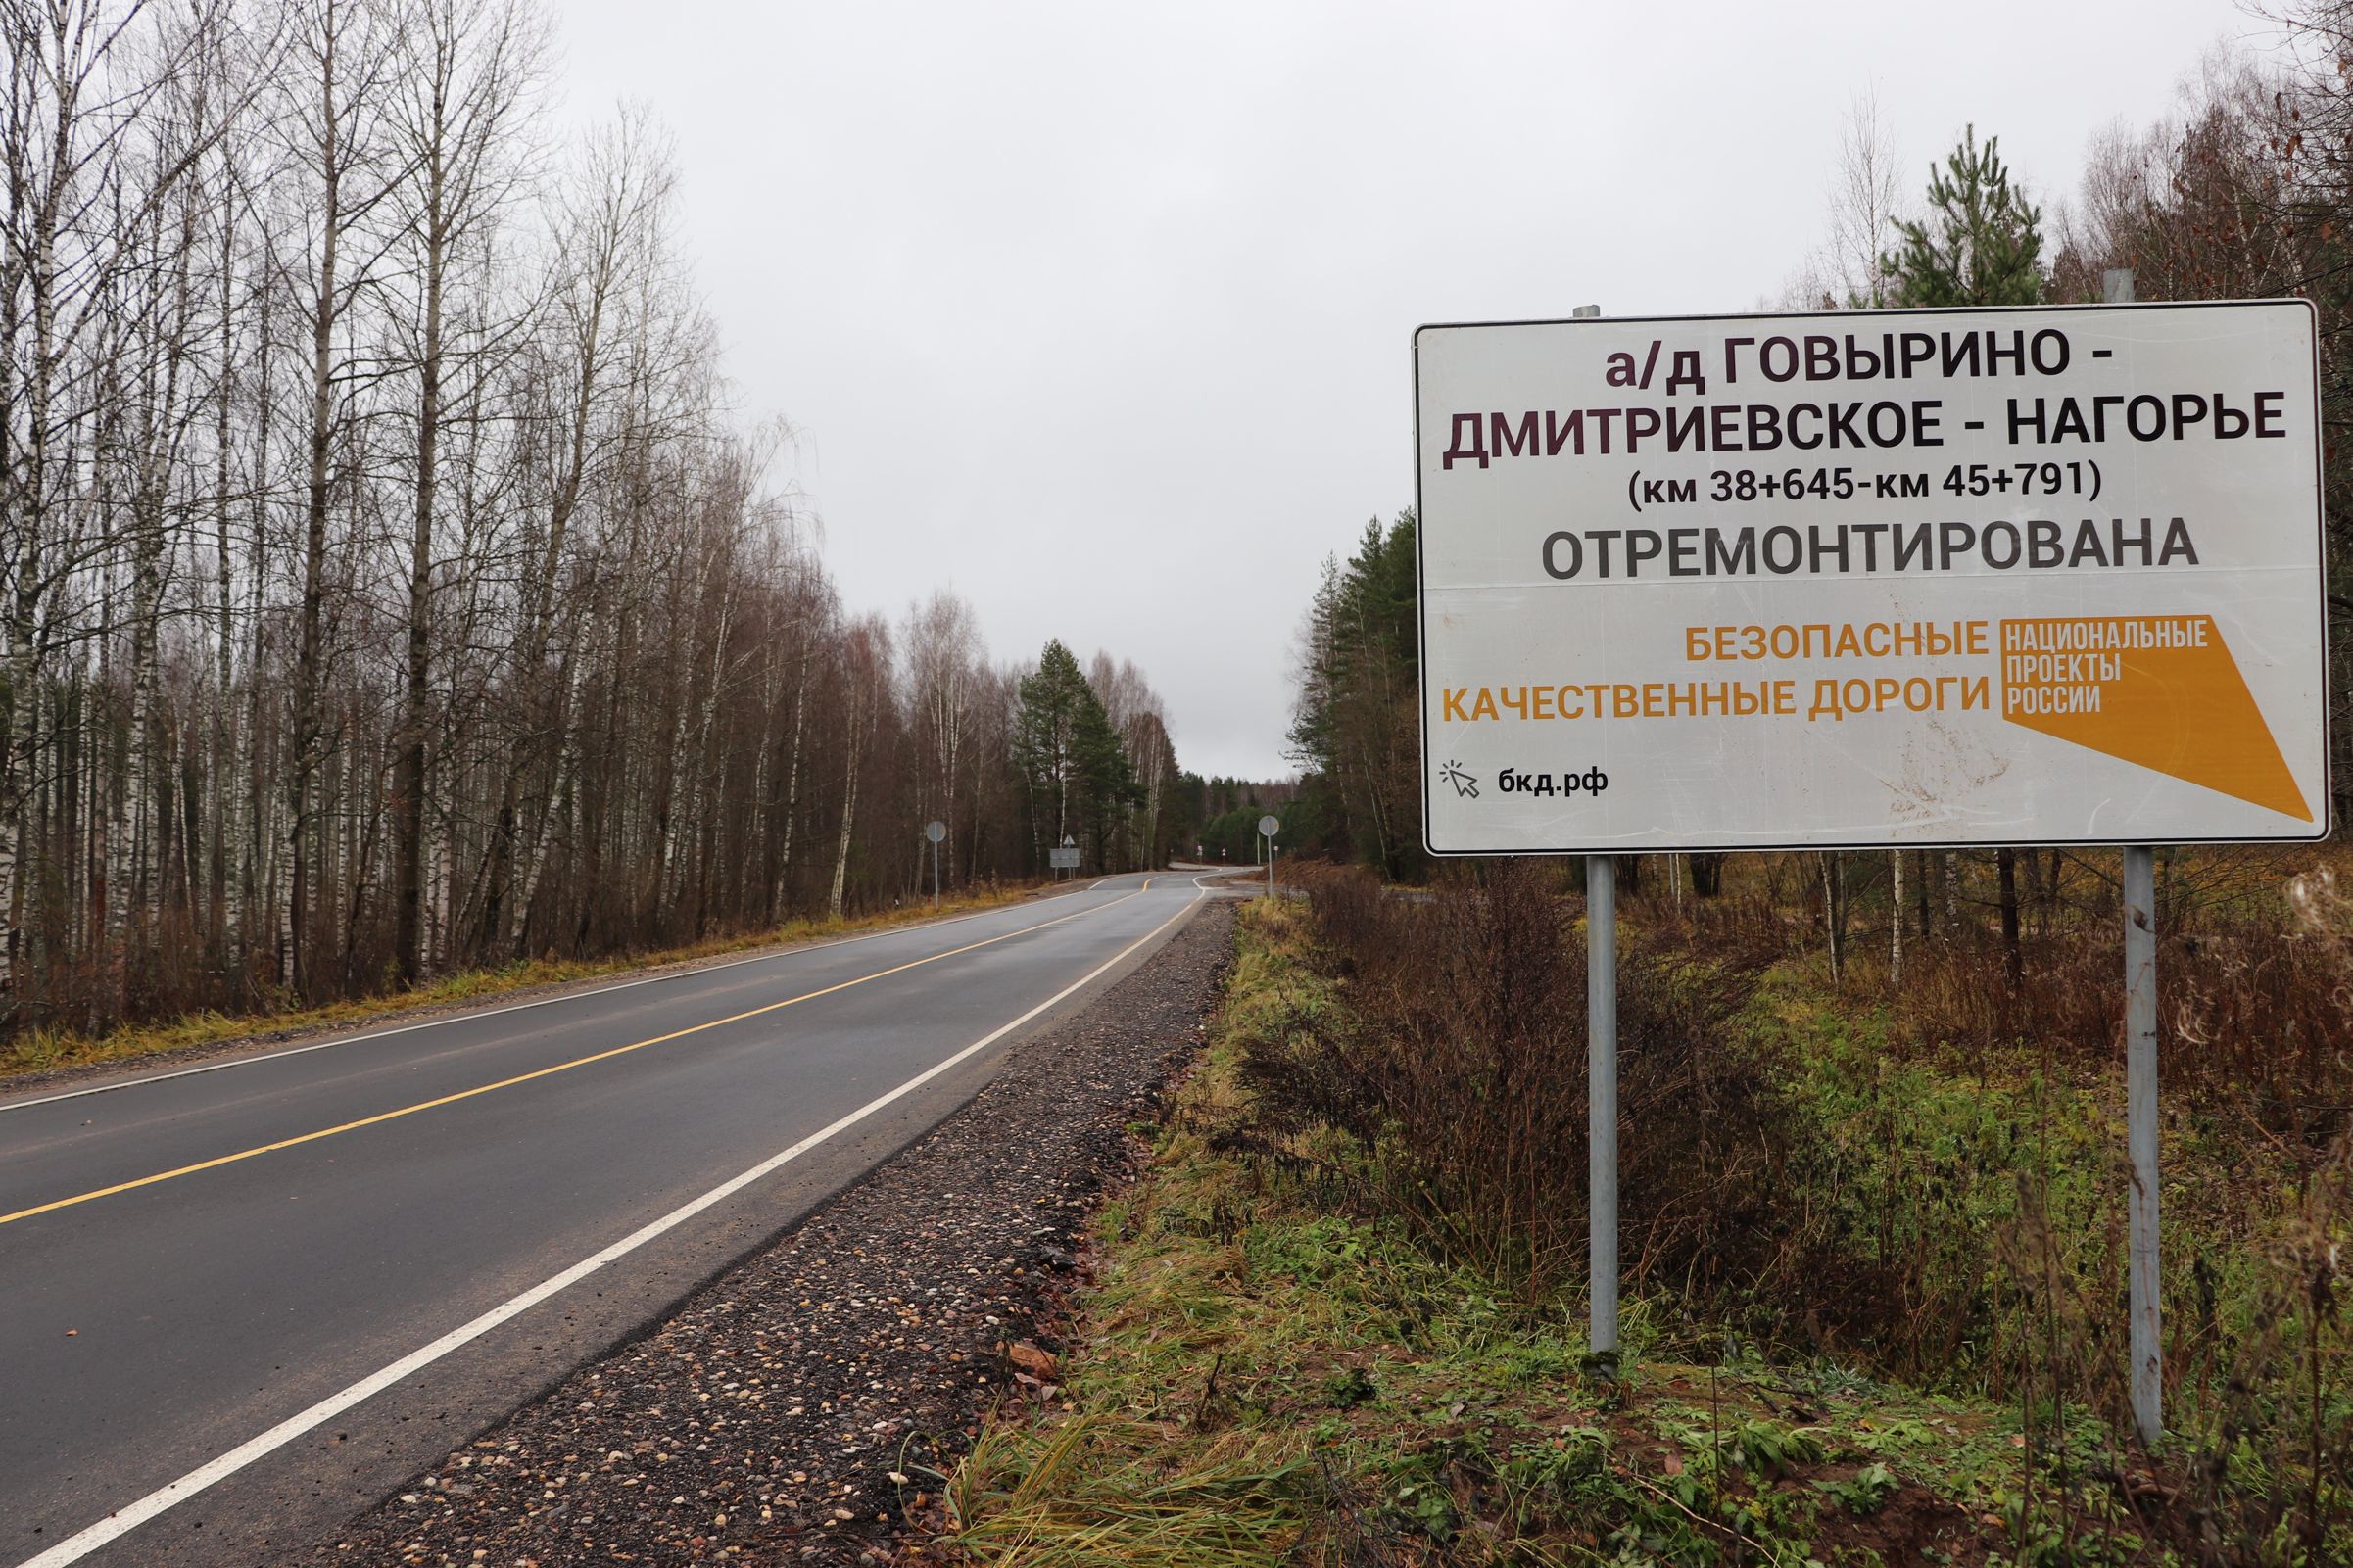 Дорогу Говырино – Дмитриевское – Нагорье сделали асфальтобетонной на всем протяжении